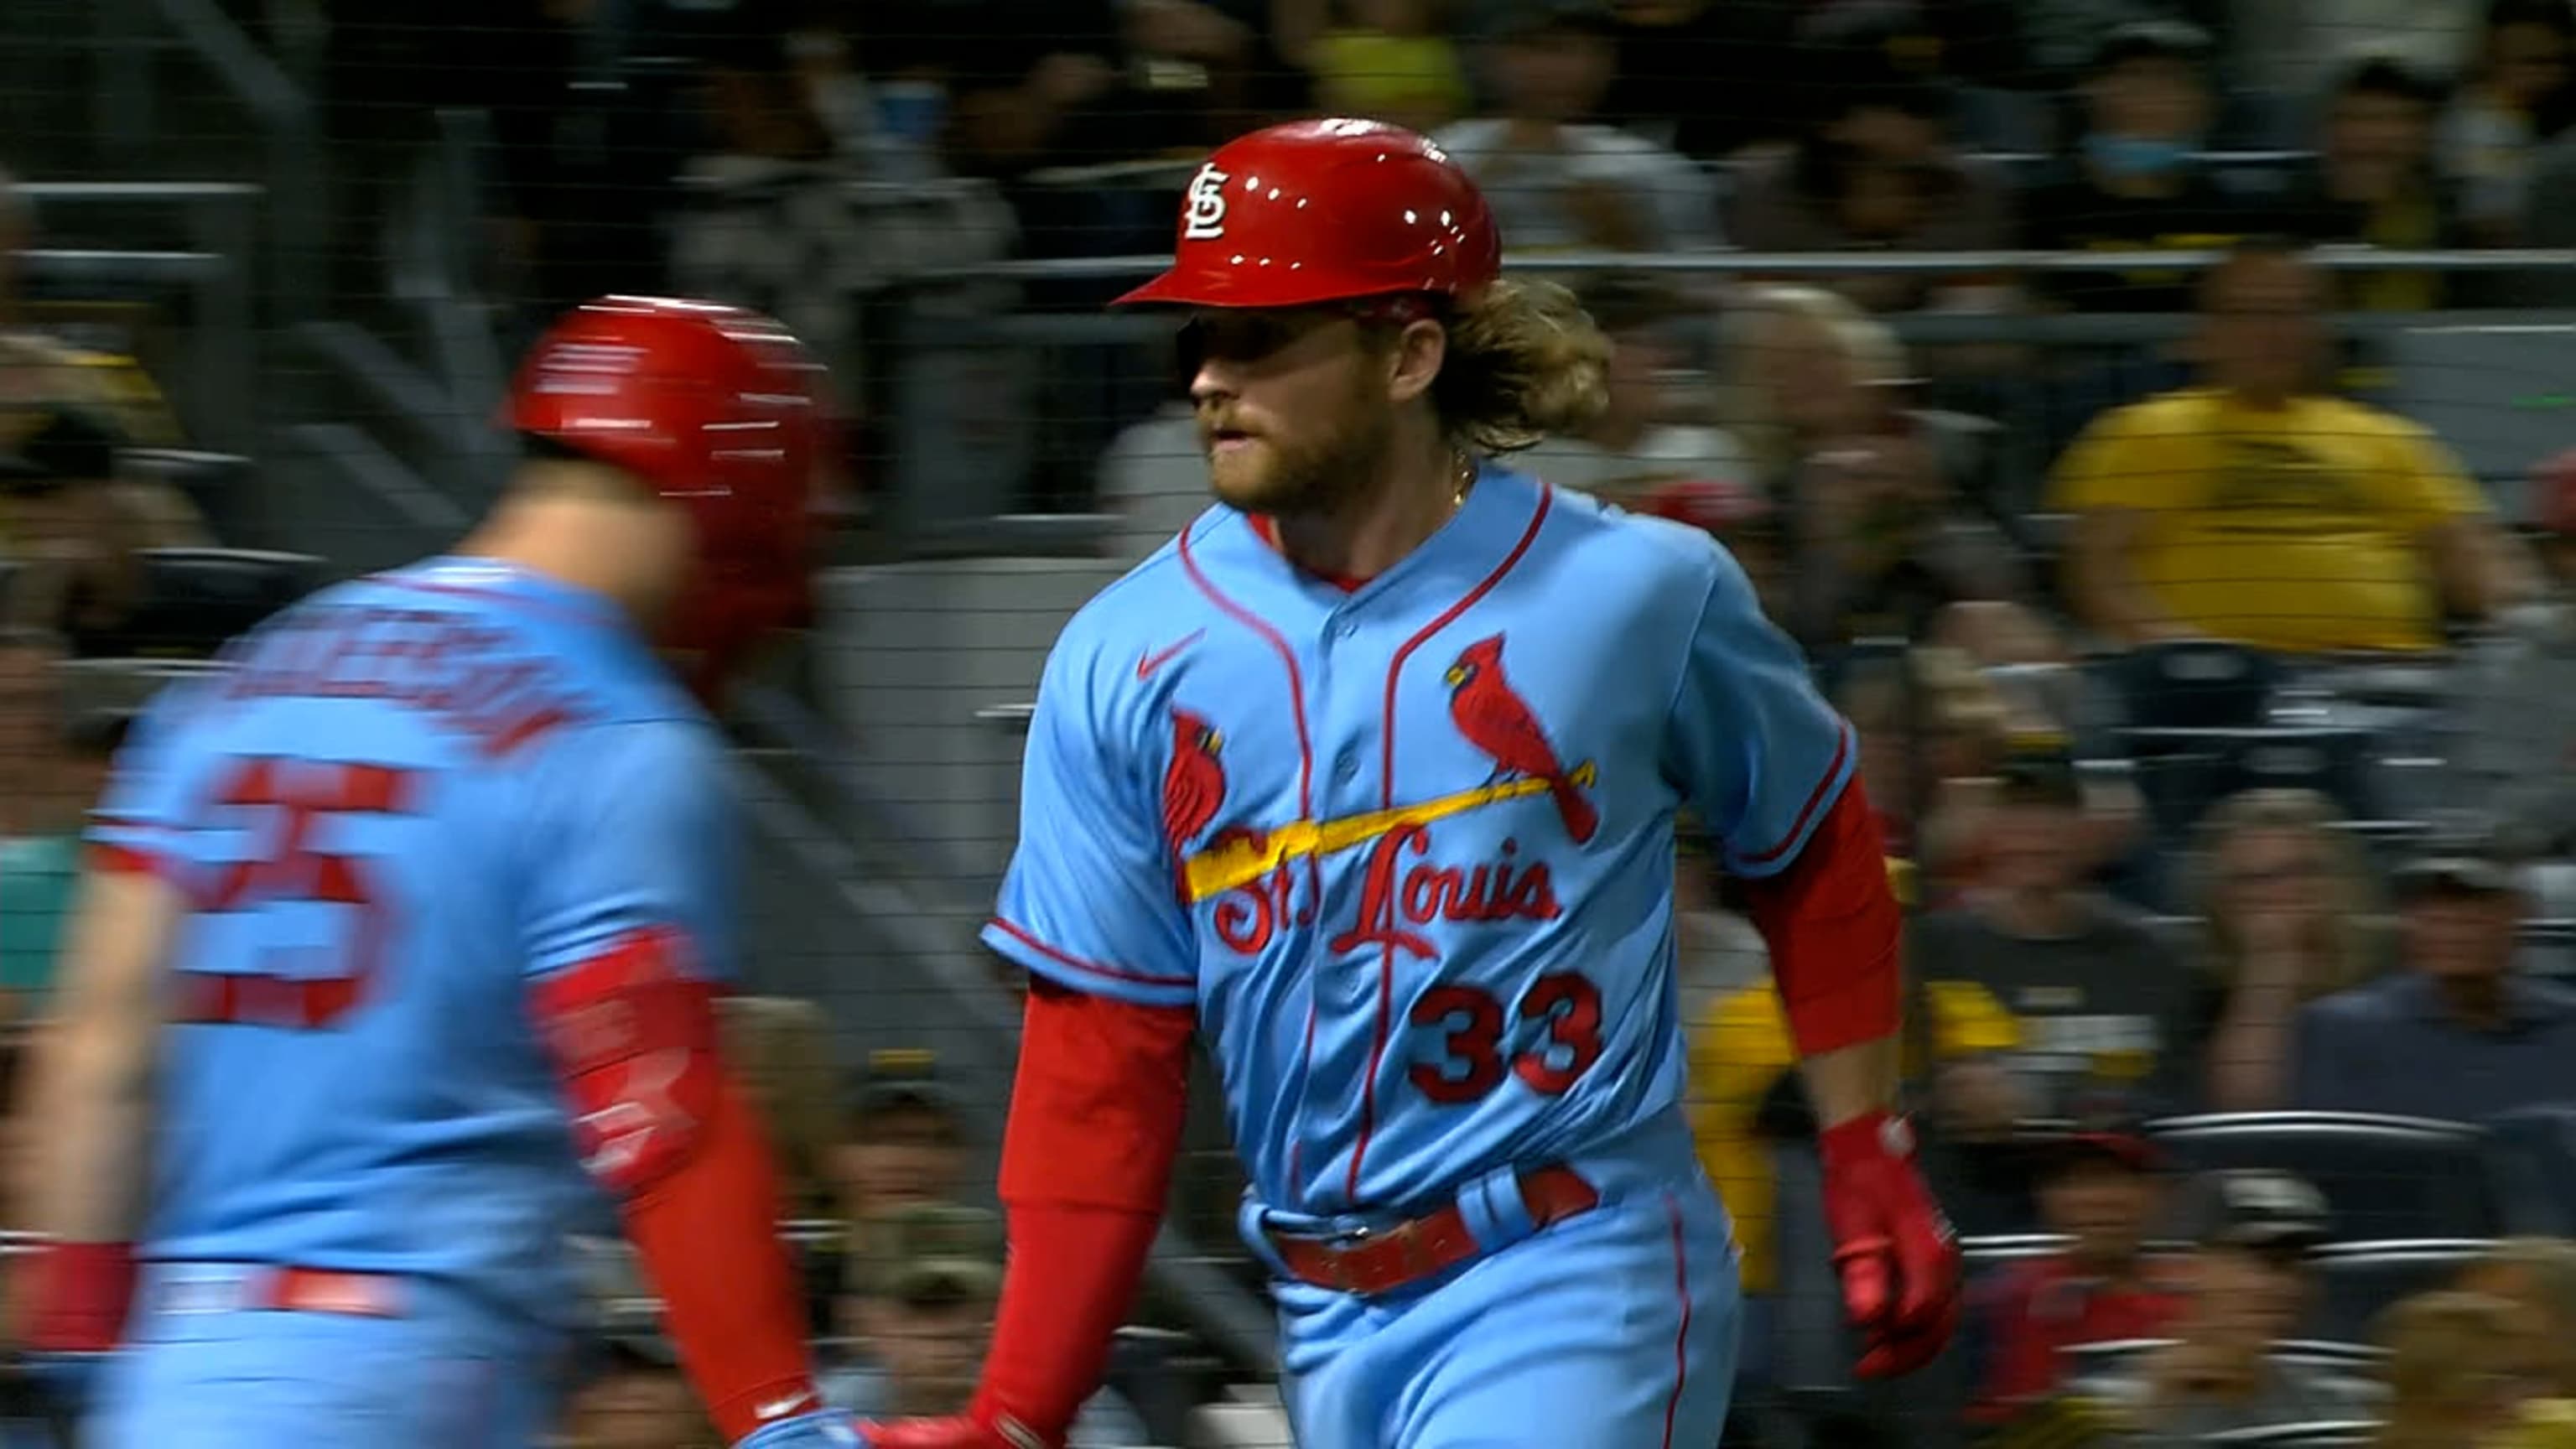 St Louis Cardinals should not use powder blue uniforms